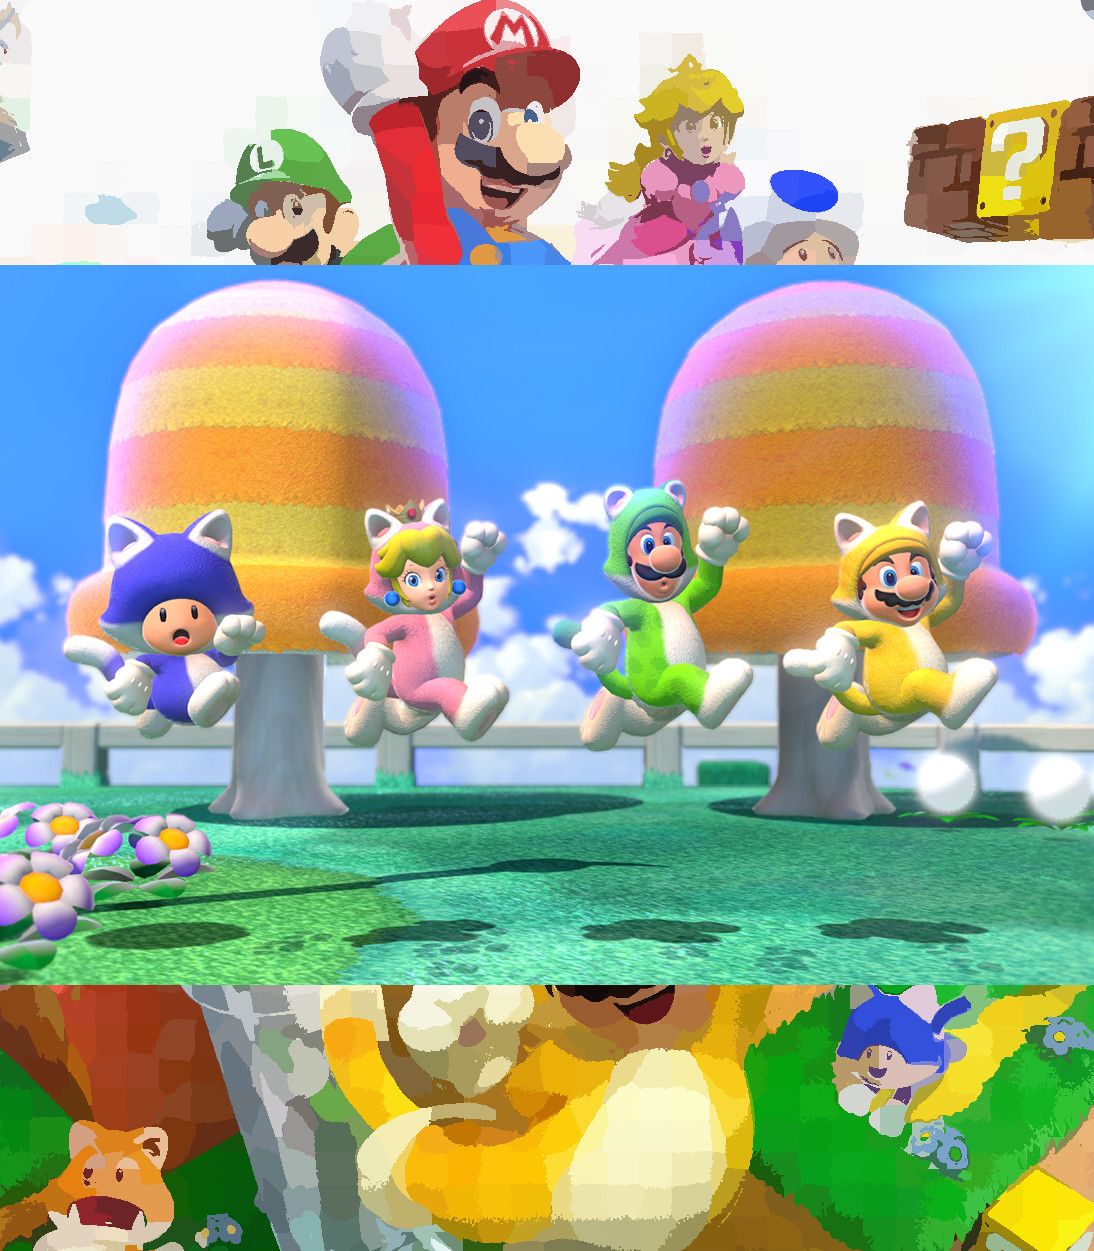 An official screenshot from Super Mario 3D World Switch